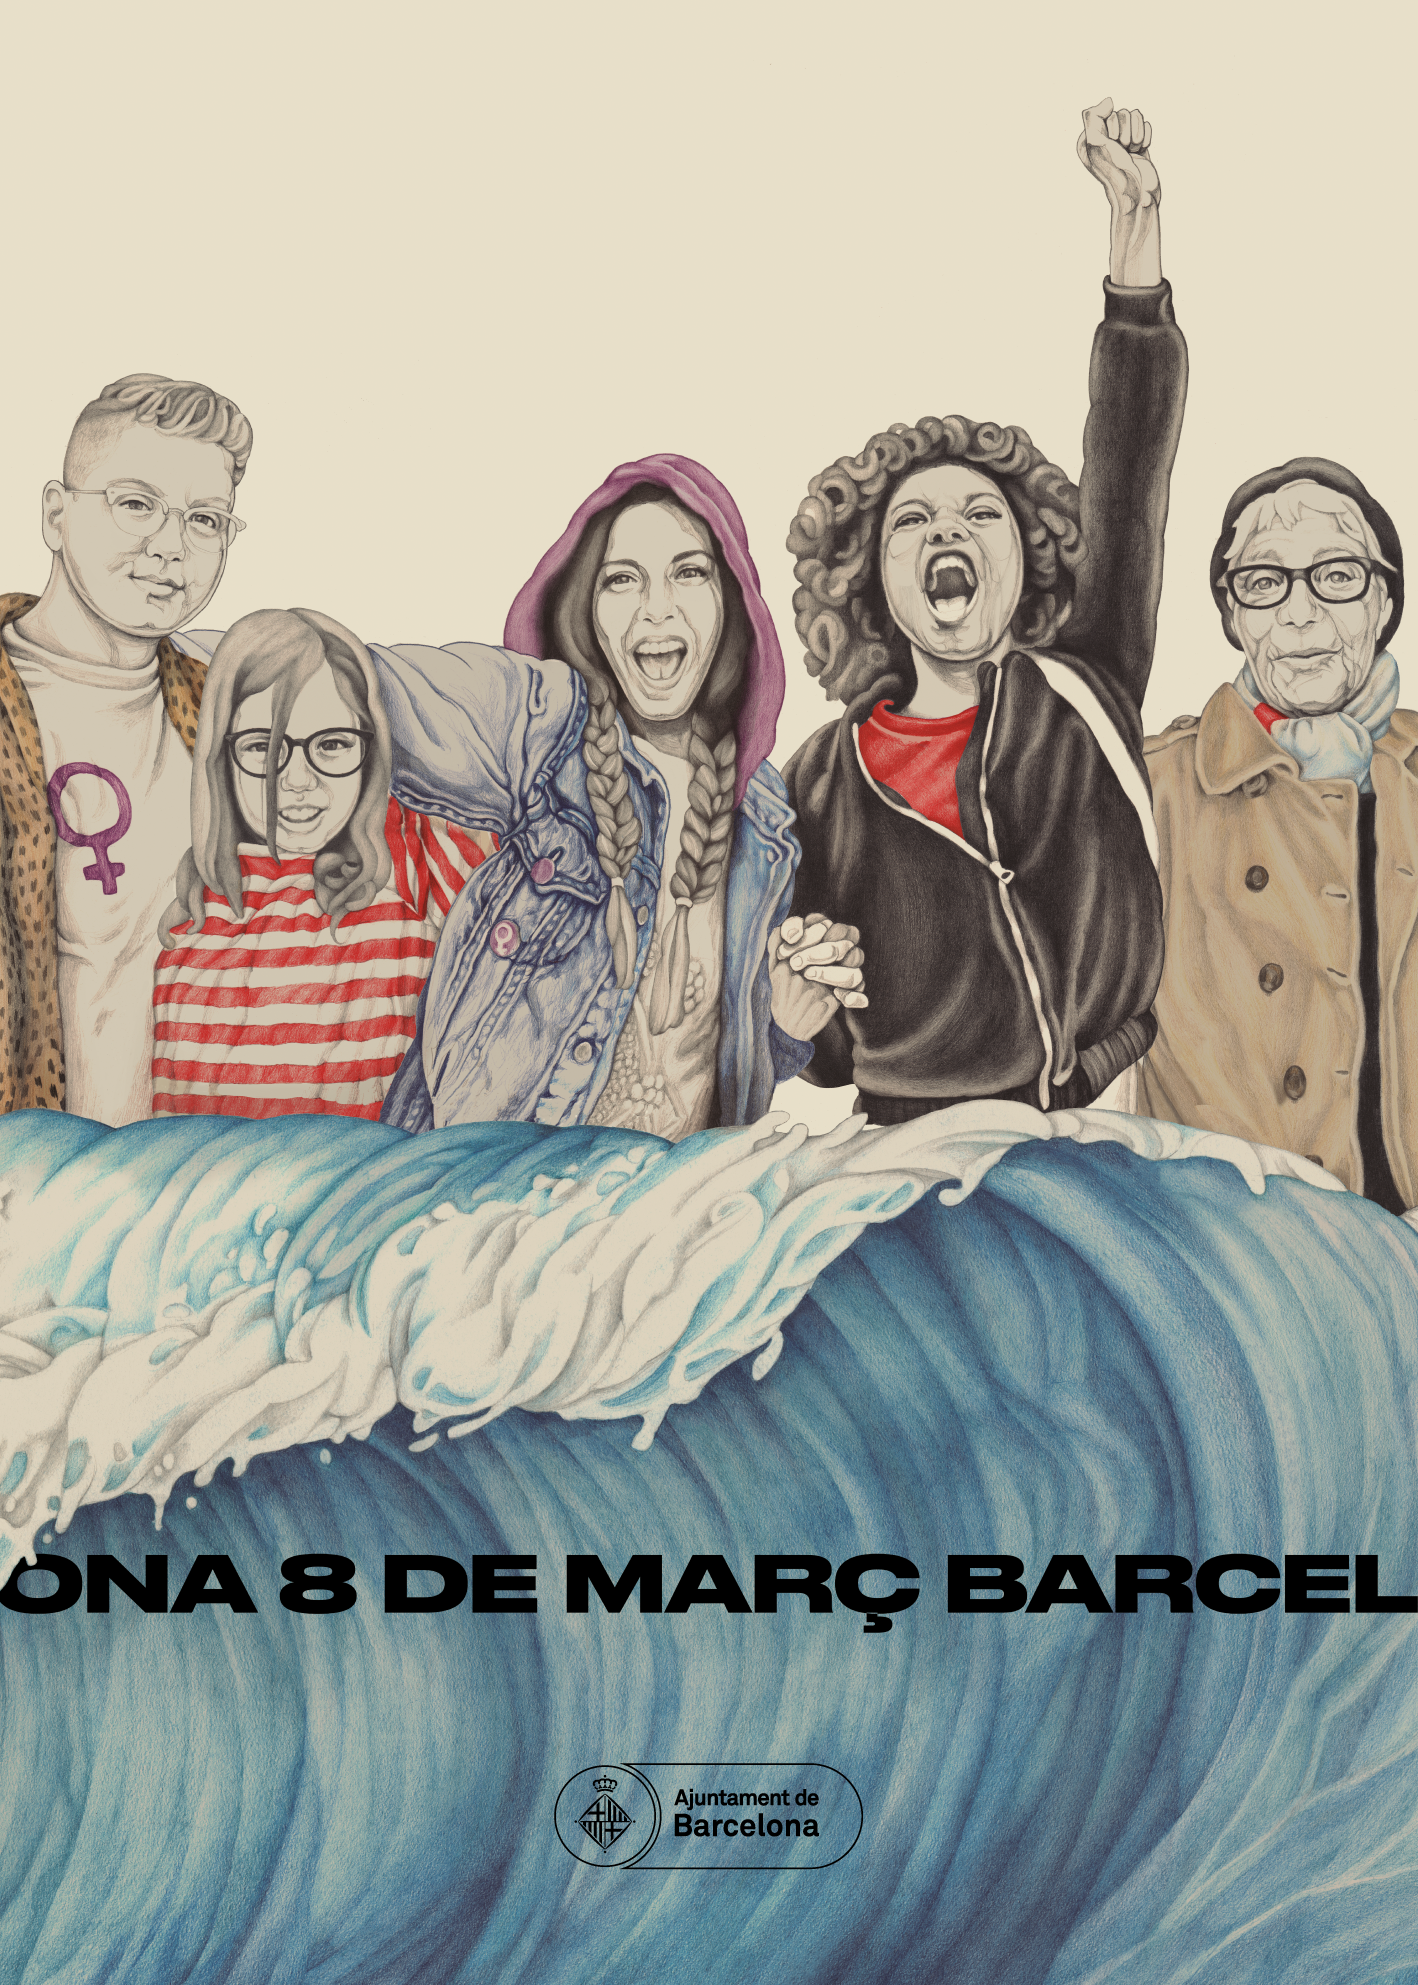 Cartell en què es pot veure un grup de dones que caminen juntes darrere una onada, representant una manifestació, amb el text “8 de març, Barcelona”. Ajuntament de Barcelona. 